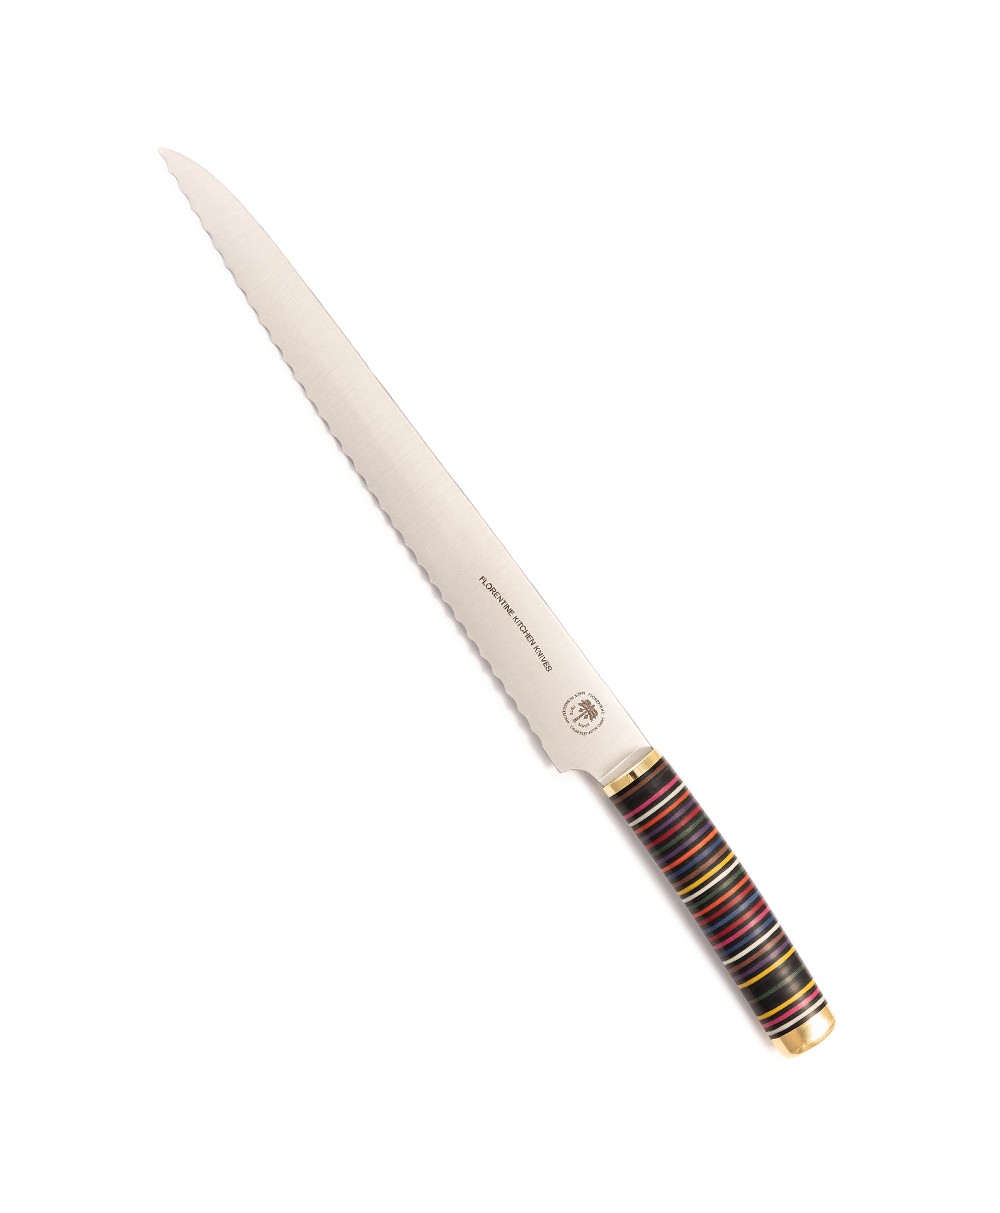 Produktbild des Florentine Brotmessers  in mixed colors von Florentine Kitchen Knives im RAUM concept store 